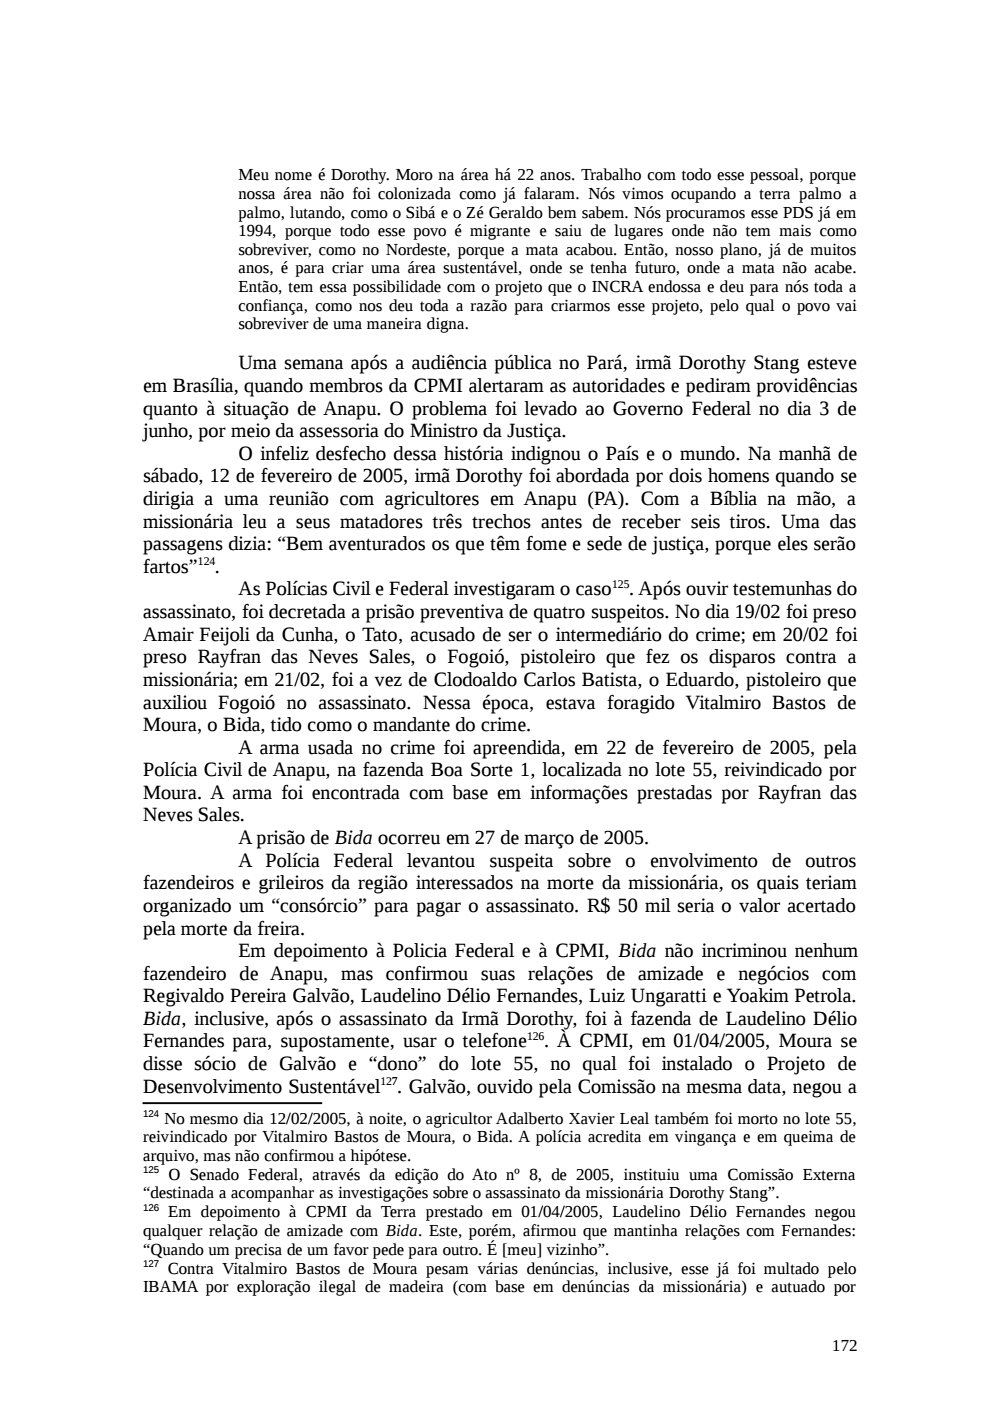 Page 172 from Relatório final da comissão